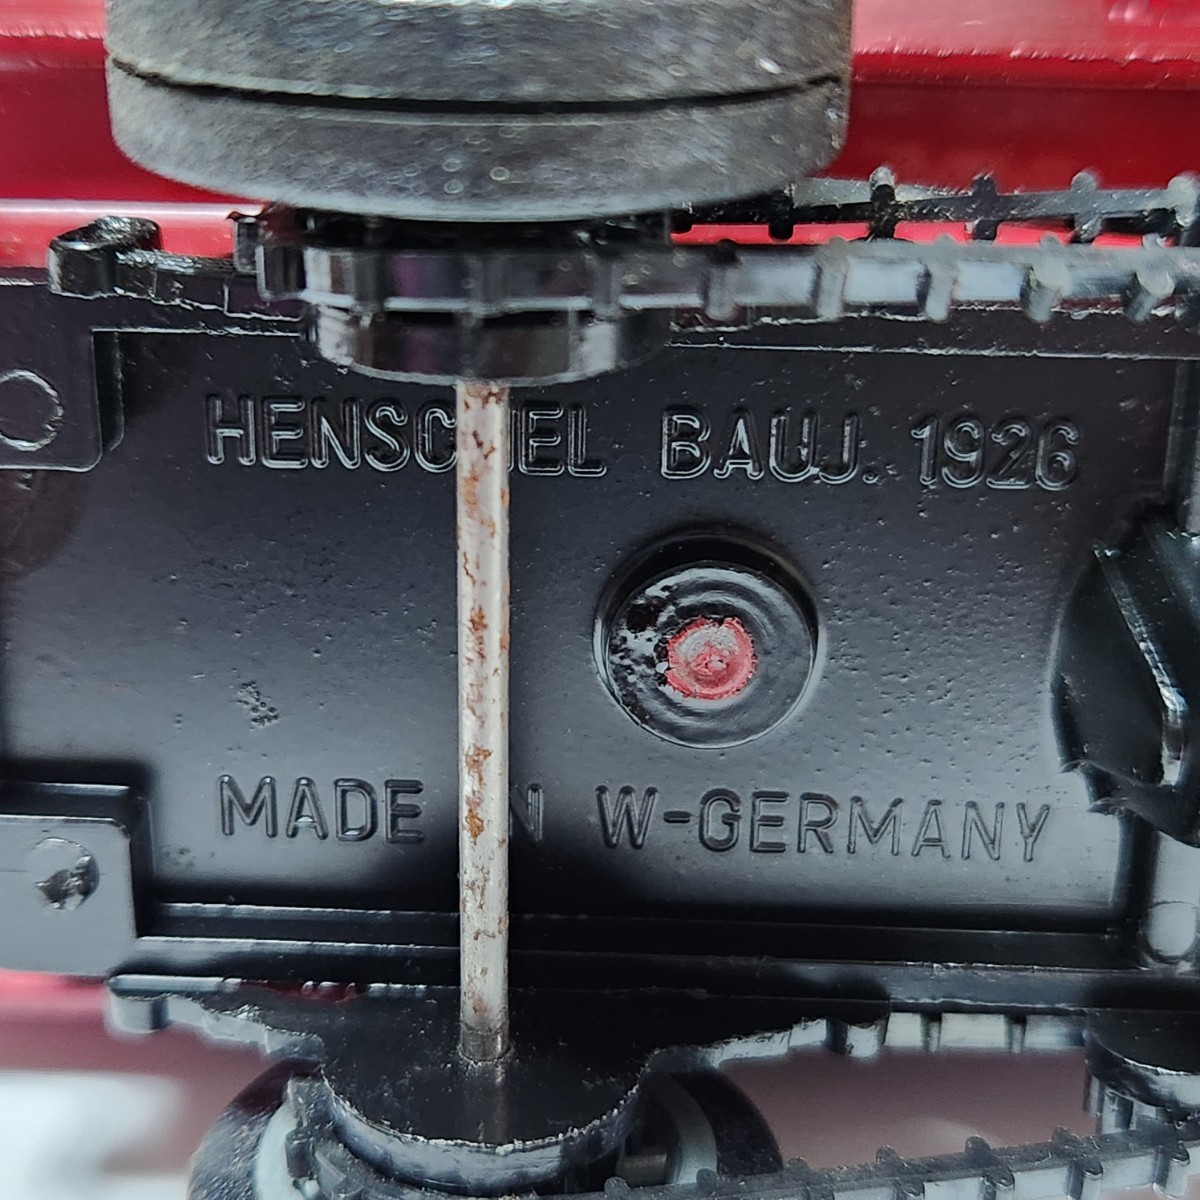 希少 レア ヴィンテージ モデルカー ヘンシェル メタル レッドグレー 1926 コレクターモデル HENSCHEL BAUJ.1926 MADE IN W-GERMANY _画像9